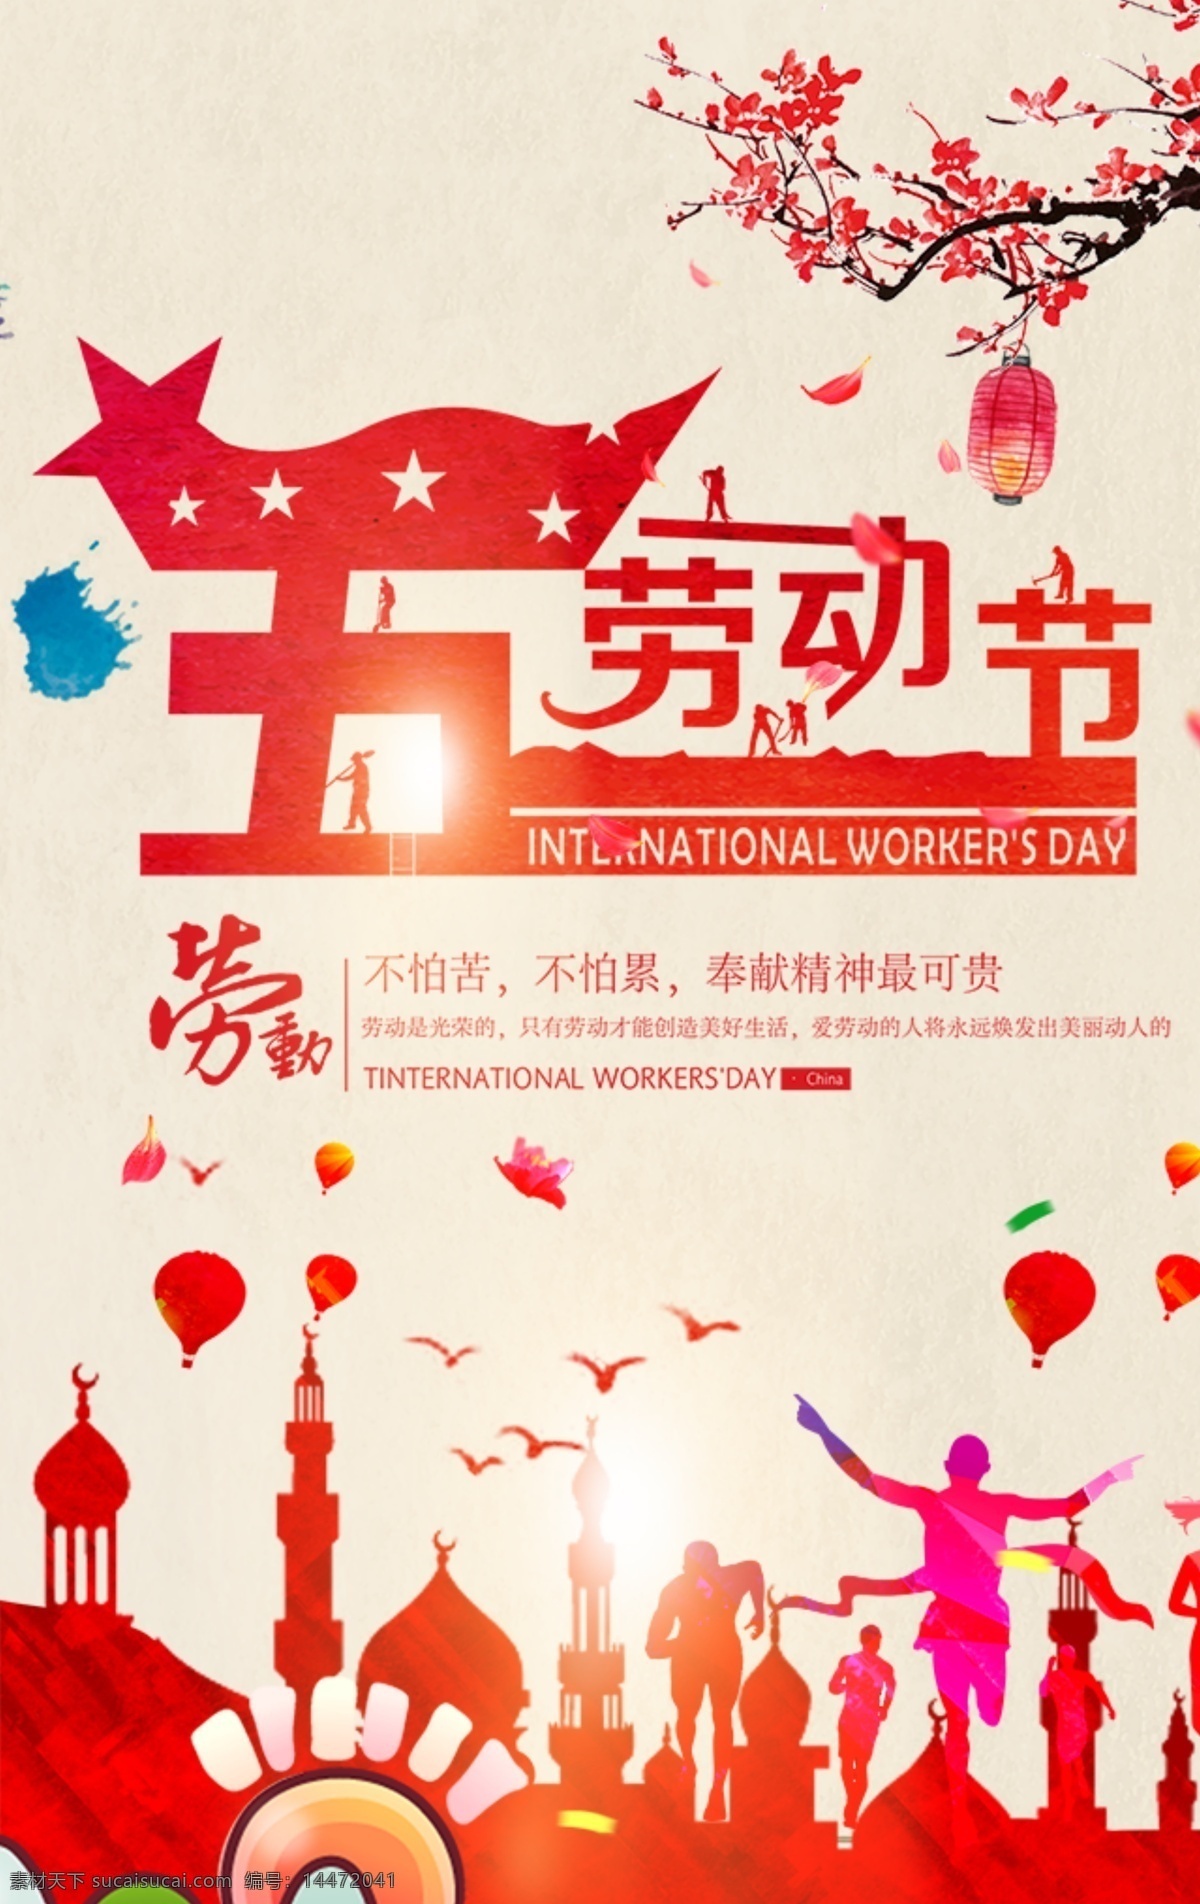 劳动节 海报 板式 封面 2018 年 新版 五 飞扬 国际节日 劳动最光荣 红色背景